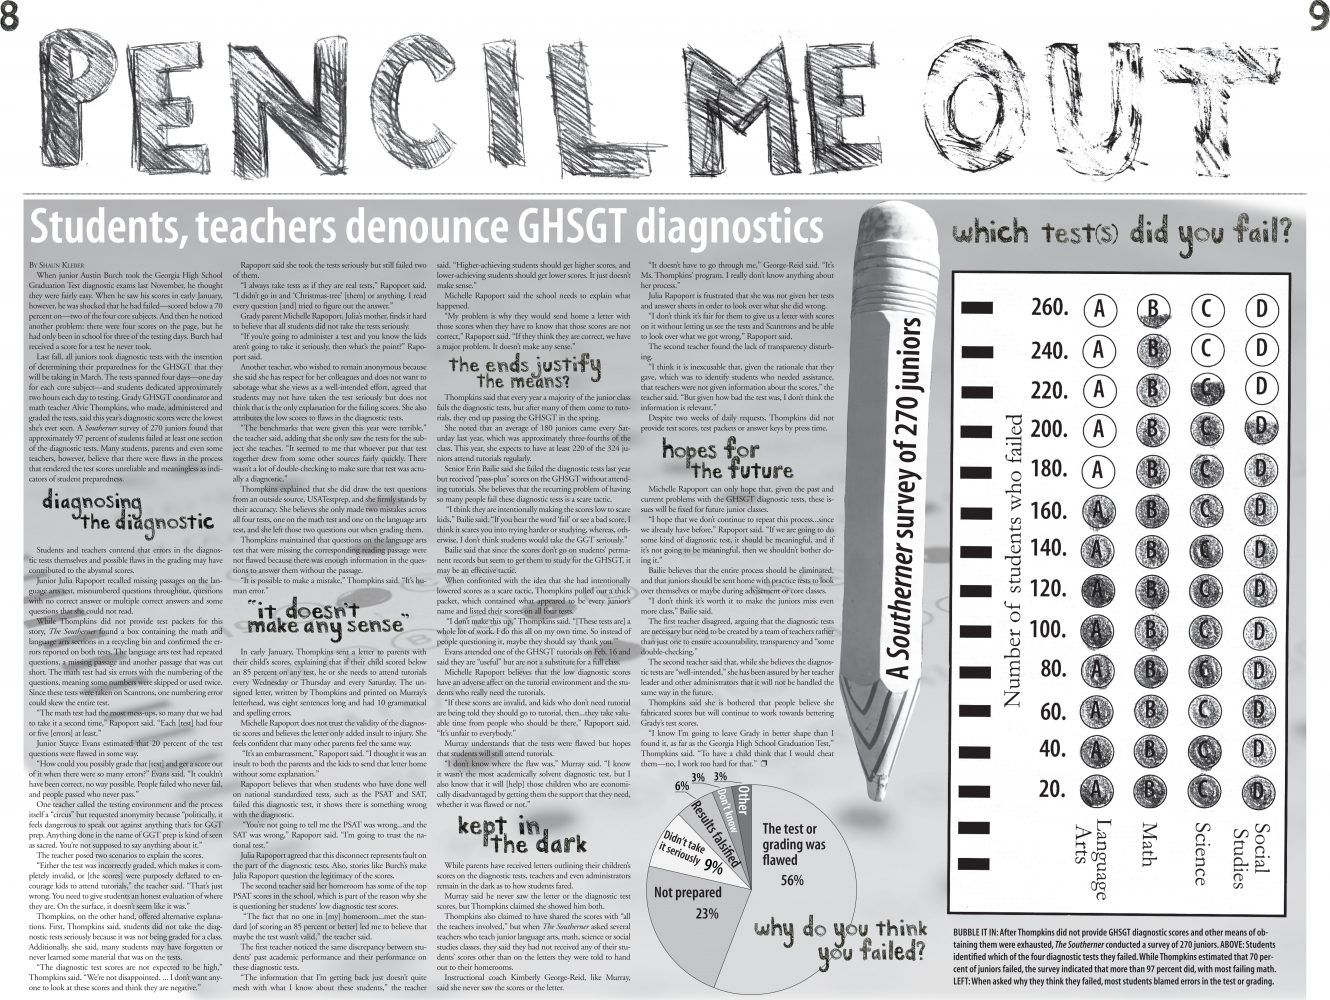 Pencil Me Out: Students, Teachers Denounce GHSGT Diagnostics